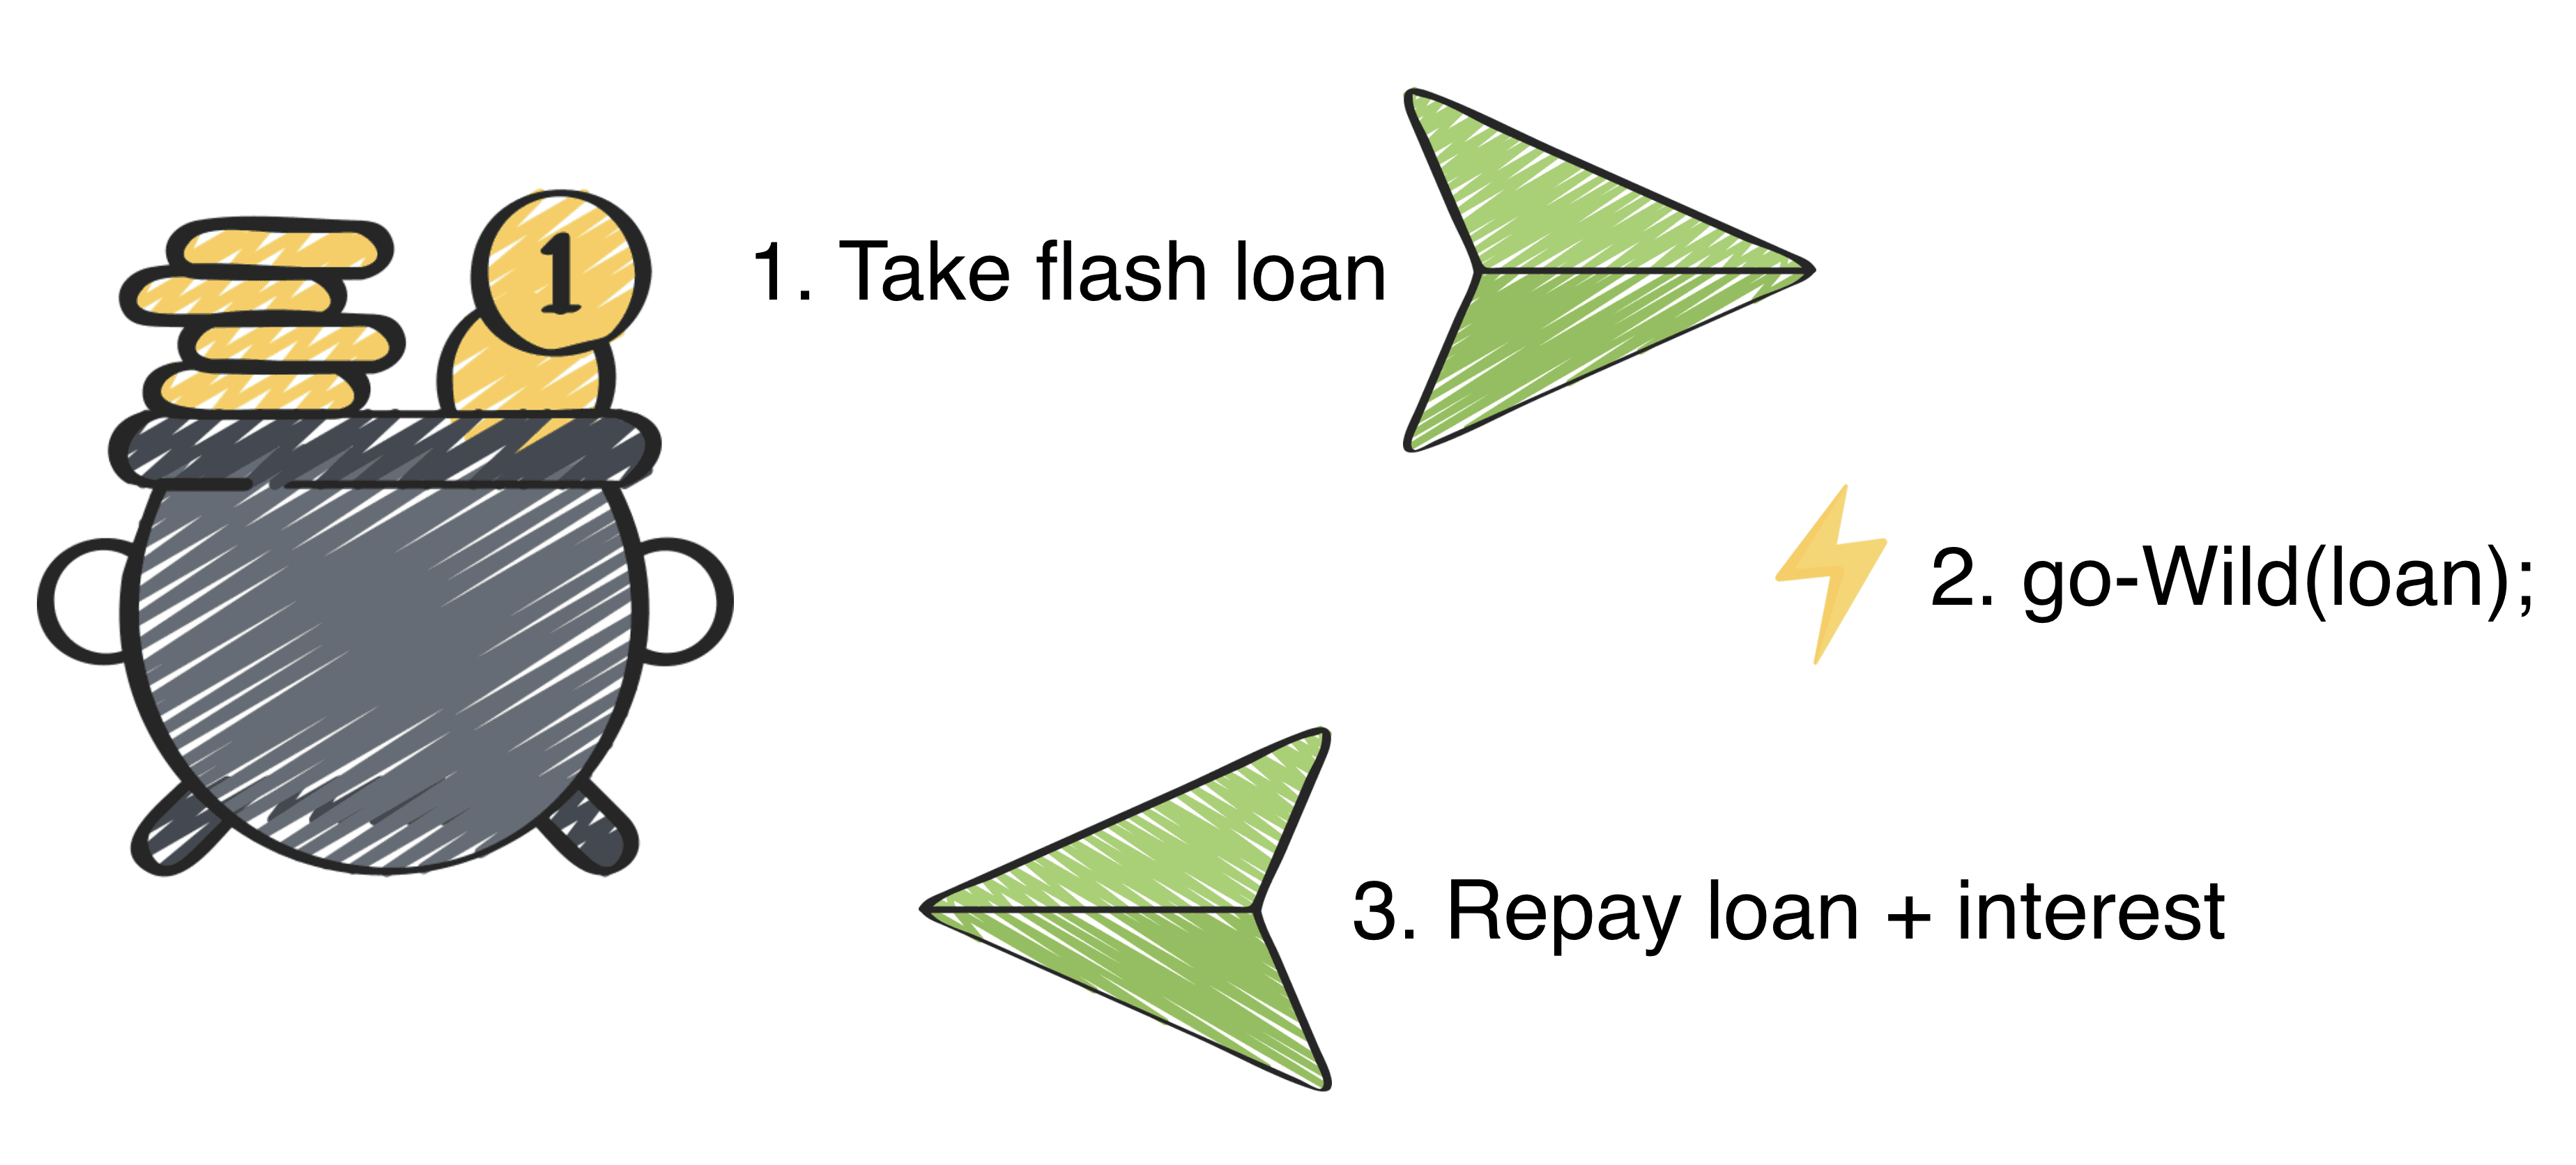 flash loans attack la gi